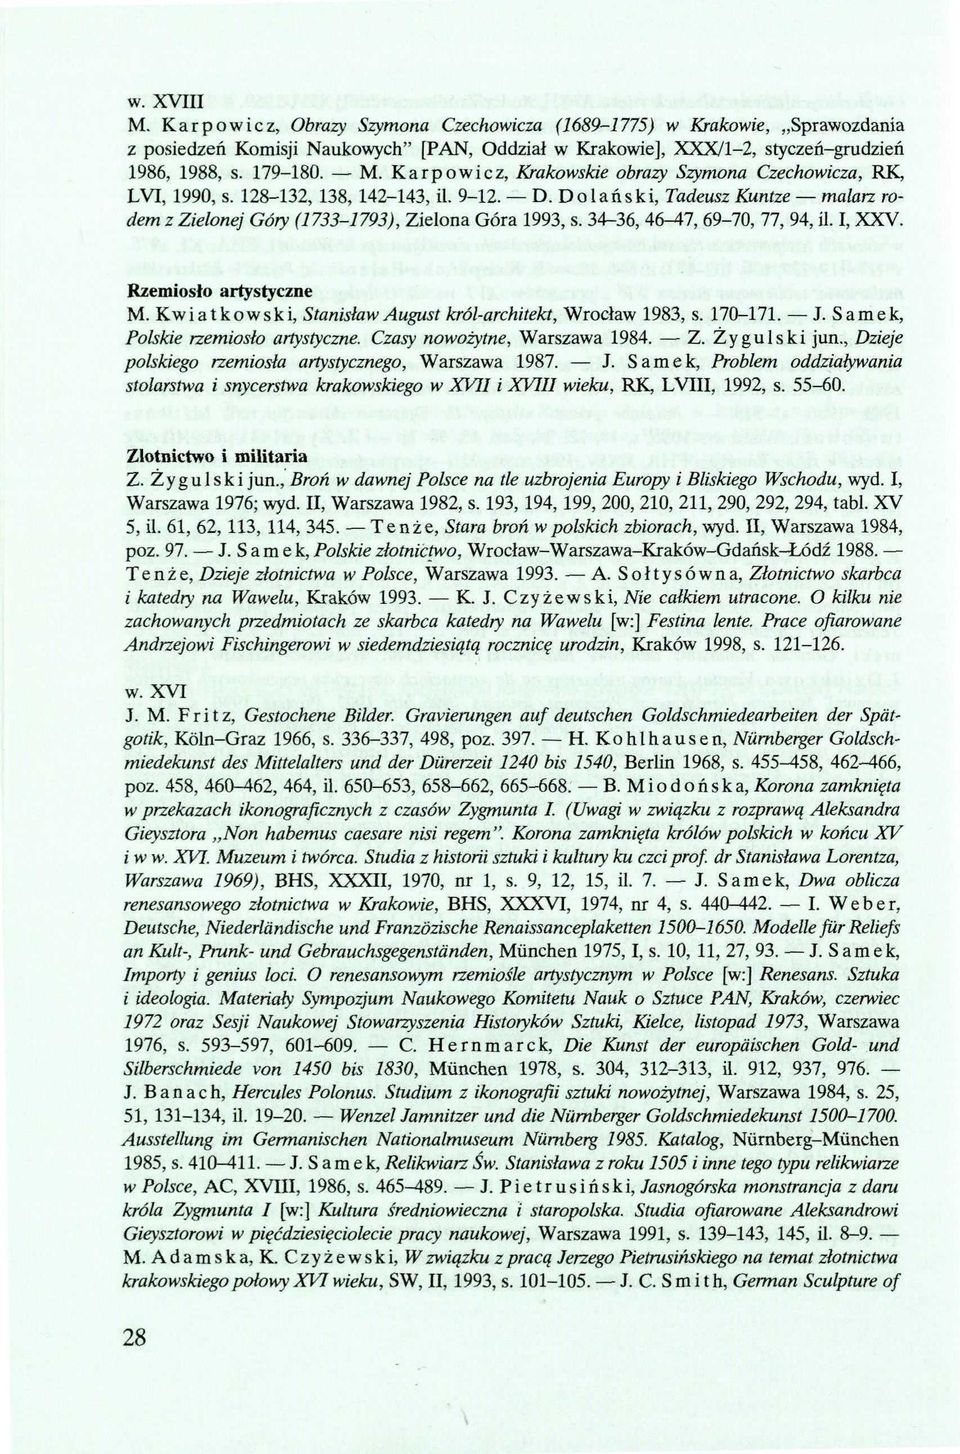 Kwiatkowski, Stanisław August król-architekt, Wrocław 1983, s. 170-171. J. Samek, Polskie rzemiosło artystyczne. Czasy nowożytne, Warszawa 1984. Z. Żygulski jun.